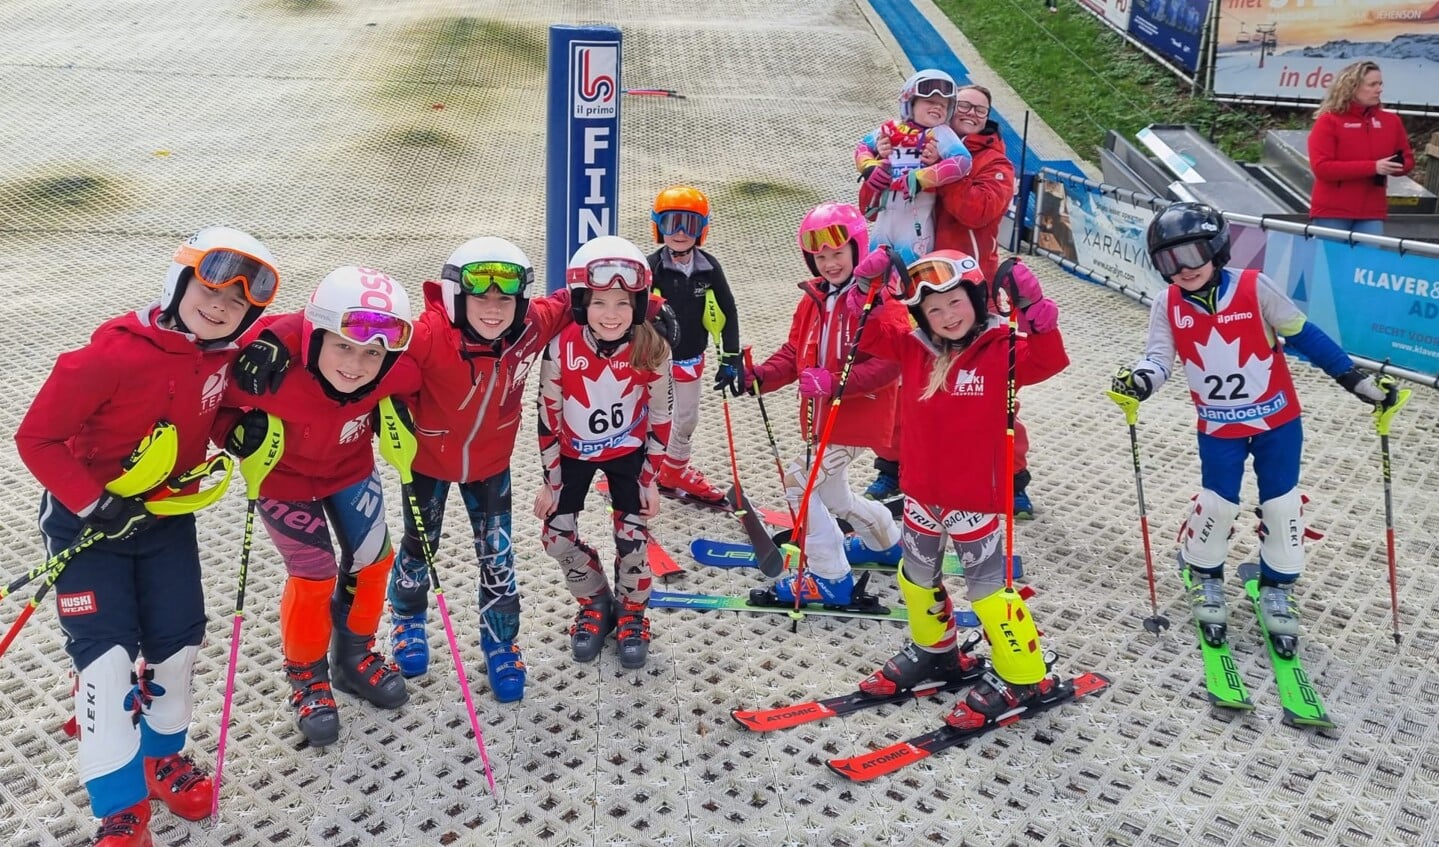 Deelnemers aan de Kids Cup onder de 12 jaar van Skiteam